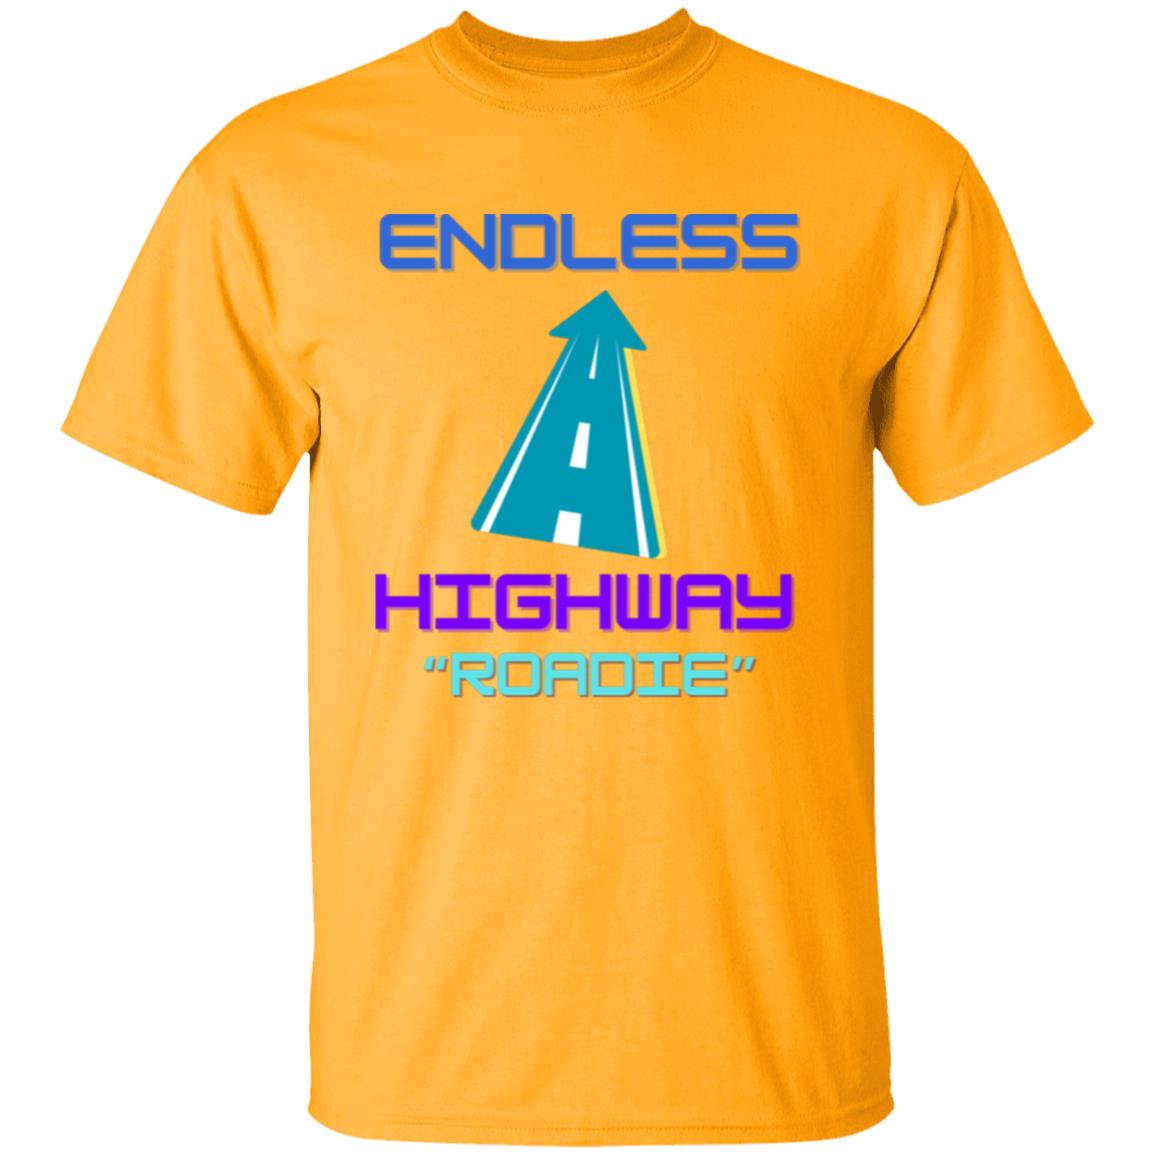 Endless Highway "Roadie" T-Shirt